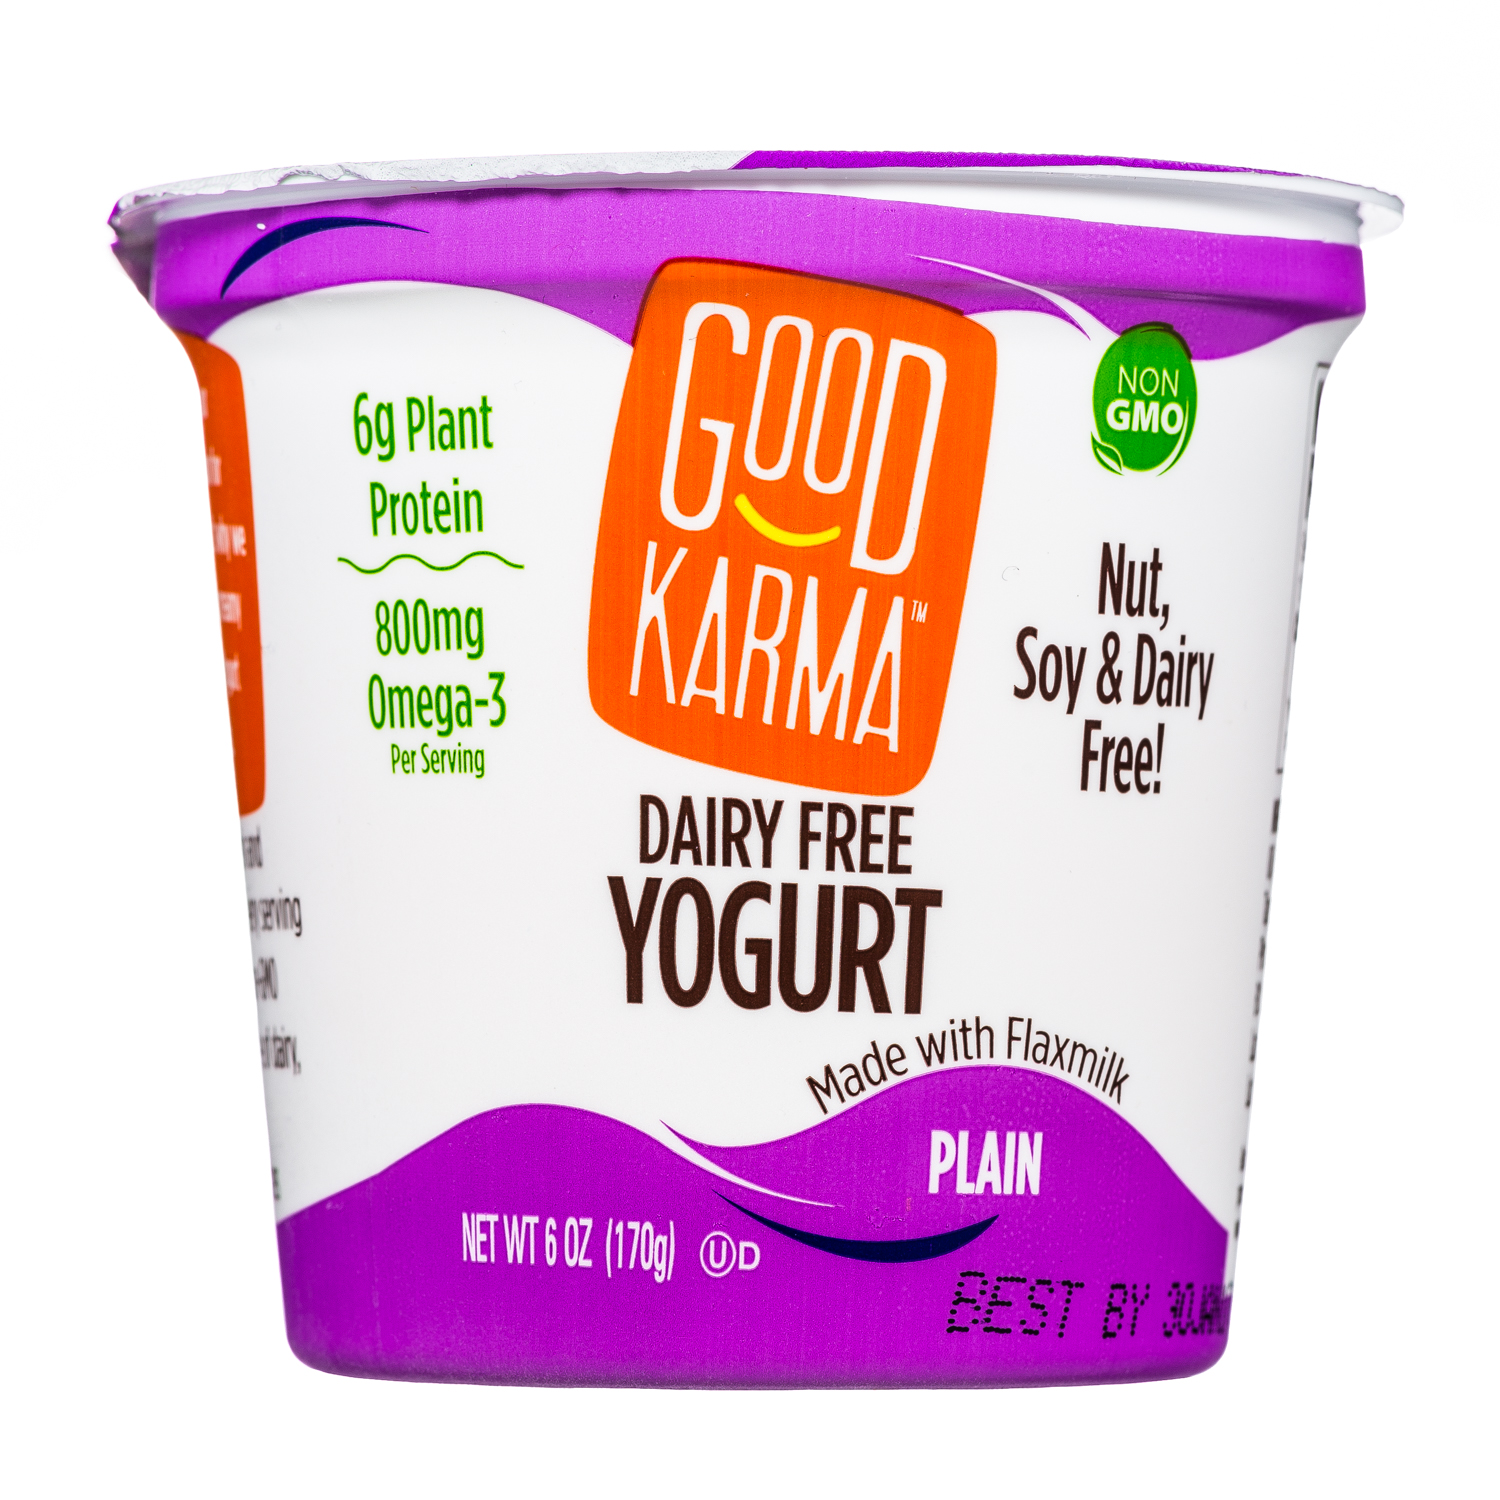 Plain Yogurt- 6oz